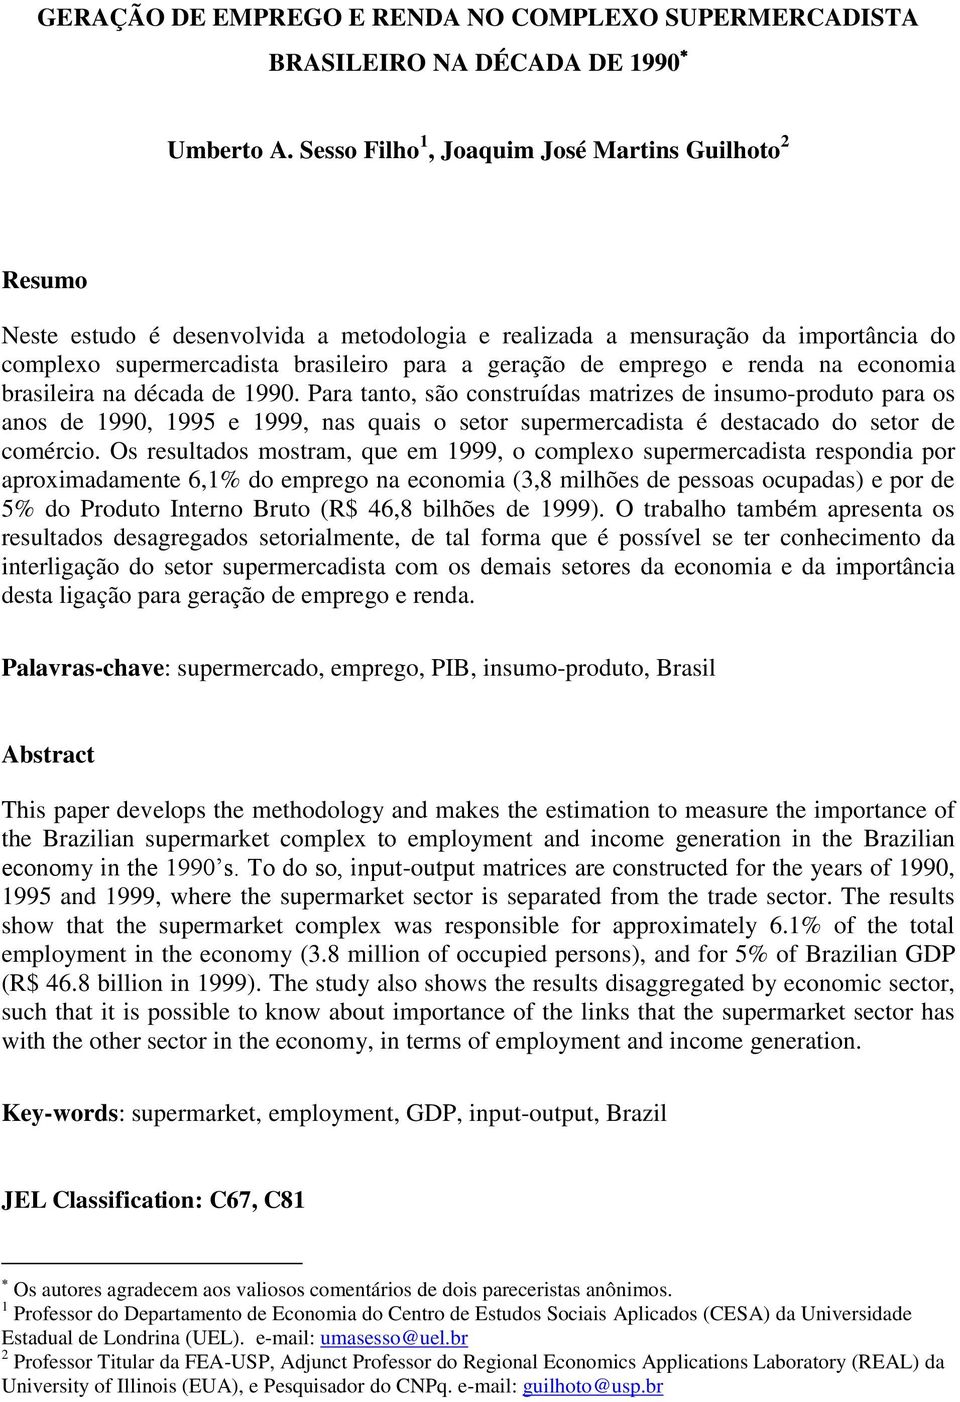 emprego e renda na economia brasileira na década de 1990.